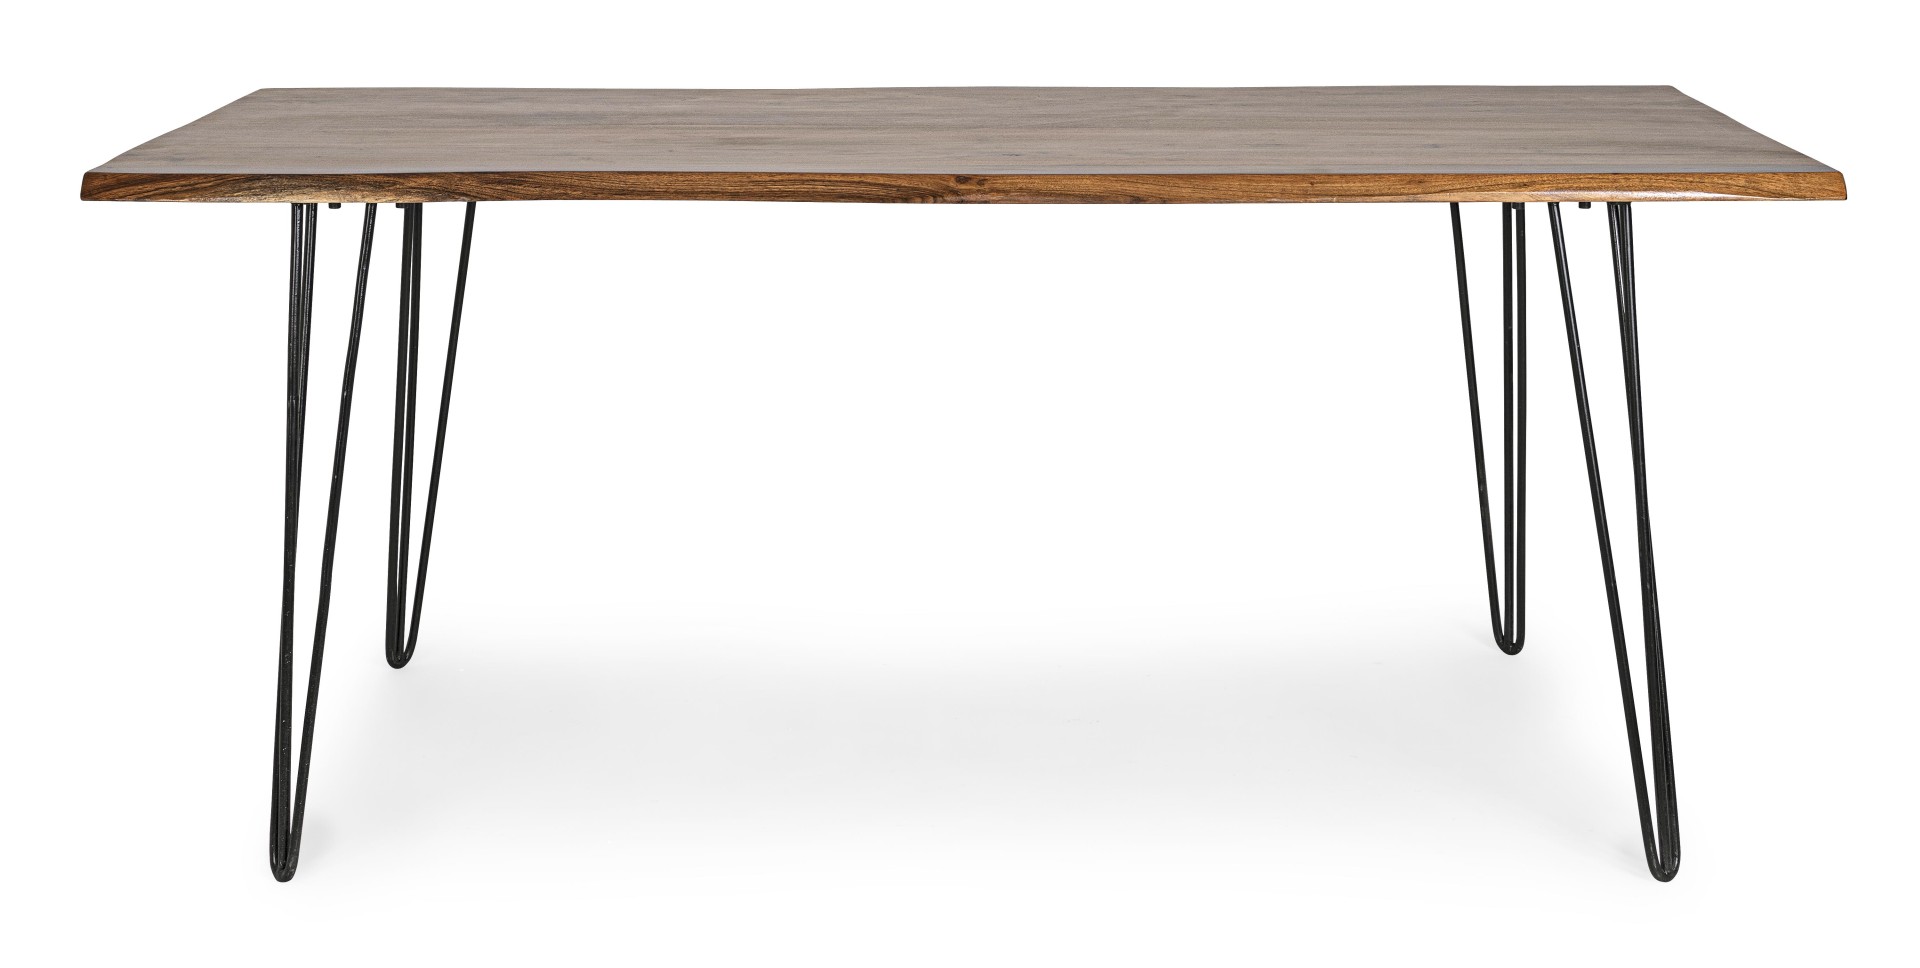 Der Esstisch Barlow überzeugt mit seinem moderndem Design. Gefertigt wurde er aus Akazienholz, welches einen natürlichen Farbton besitzt. Das Gestell des Tisches ist aus Metall und ist in eine schwarze Farbe. Der Tisch besitzt eine Breite von 180 cm.